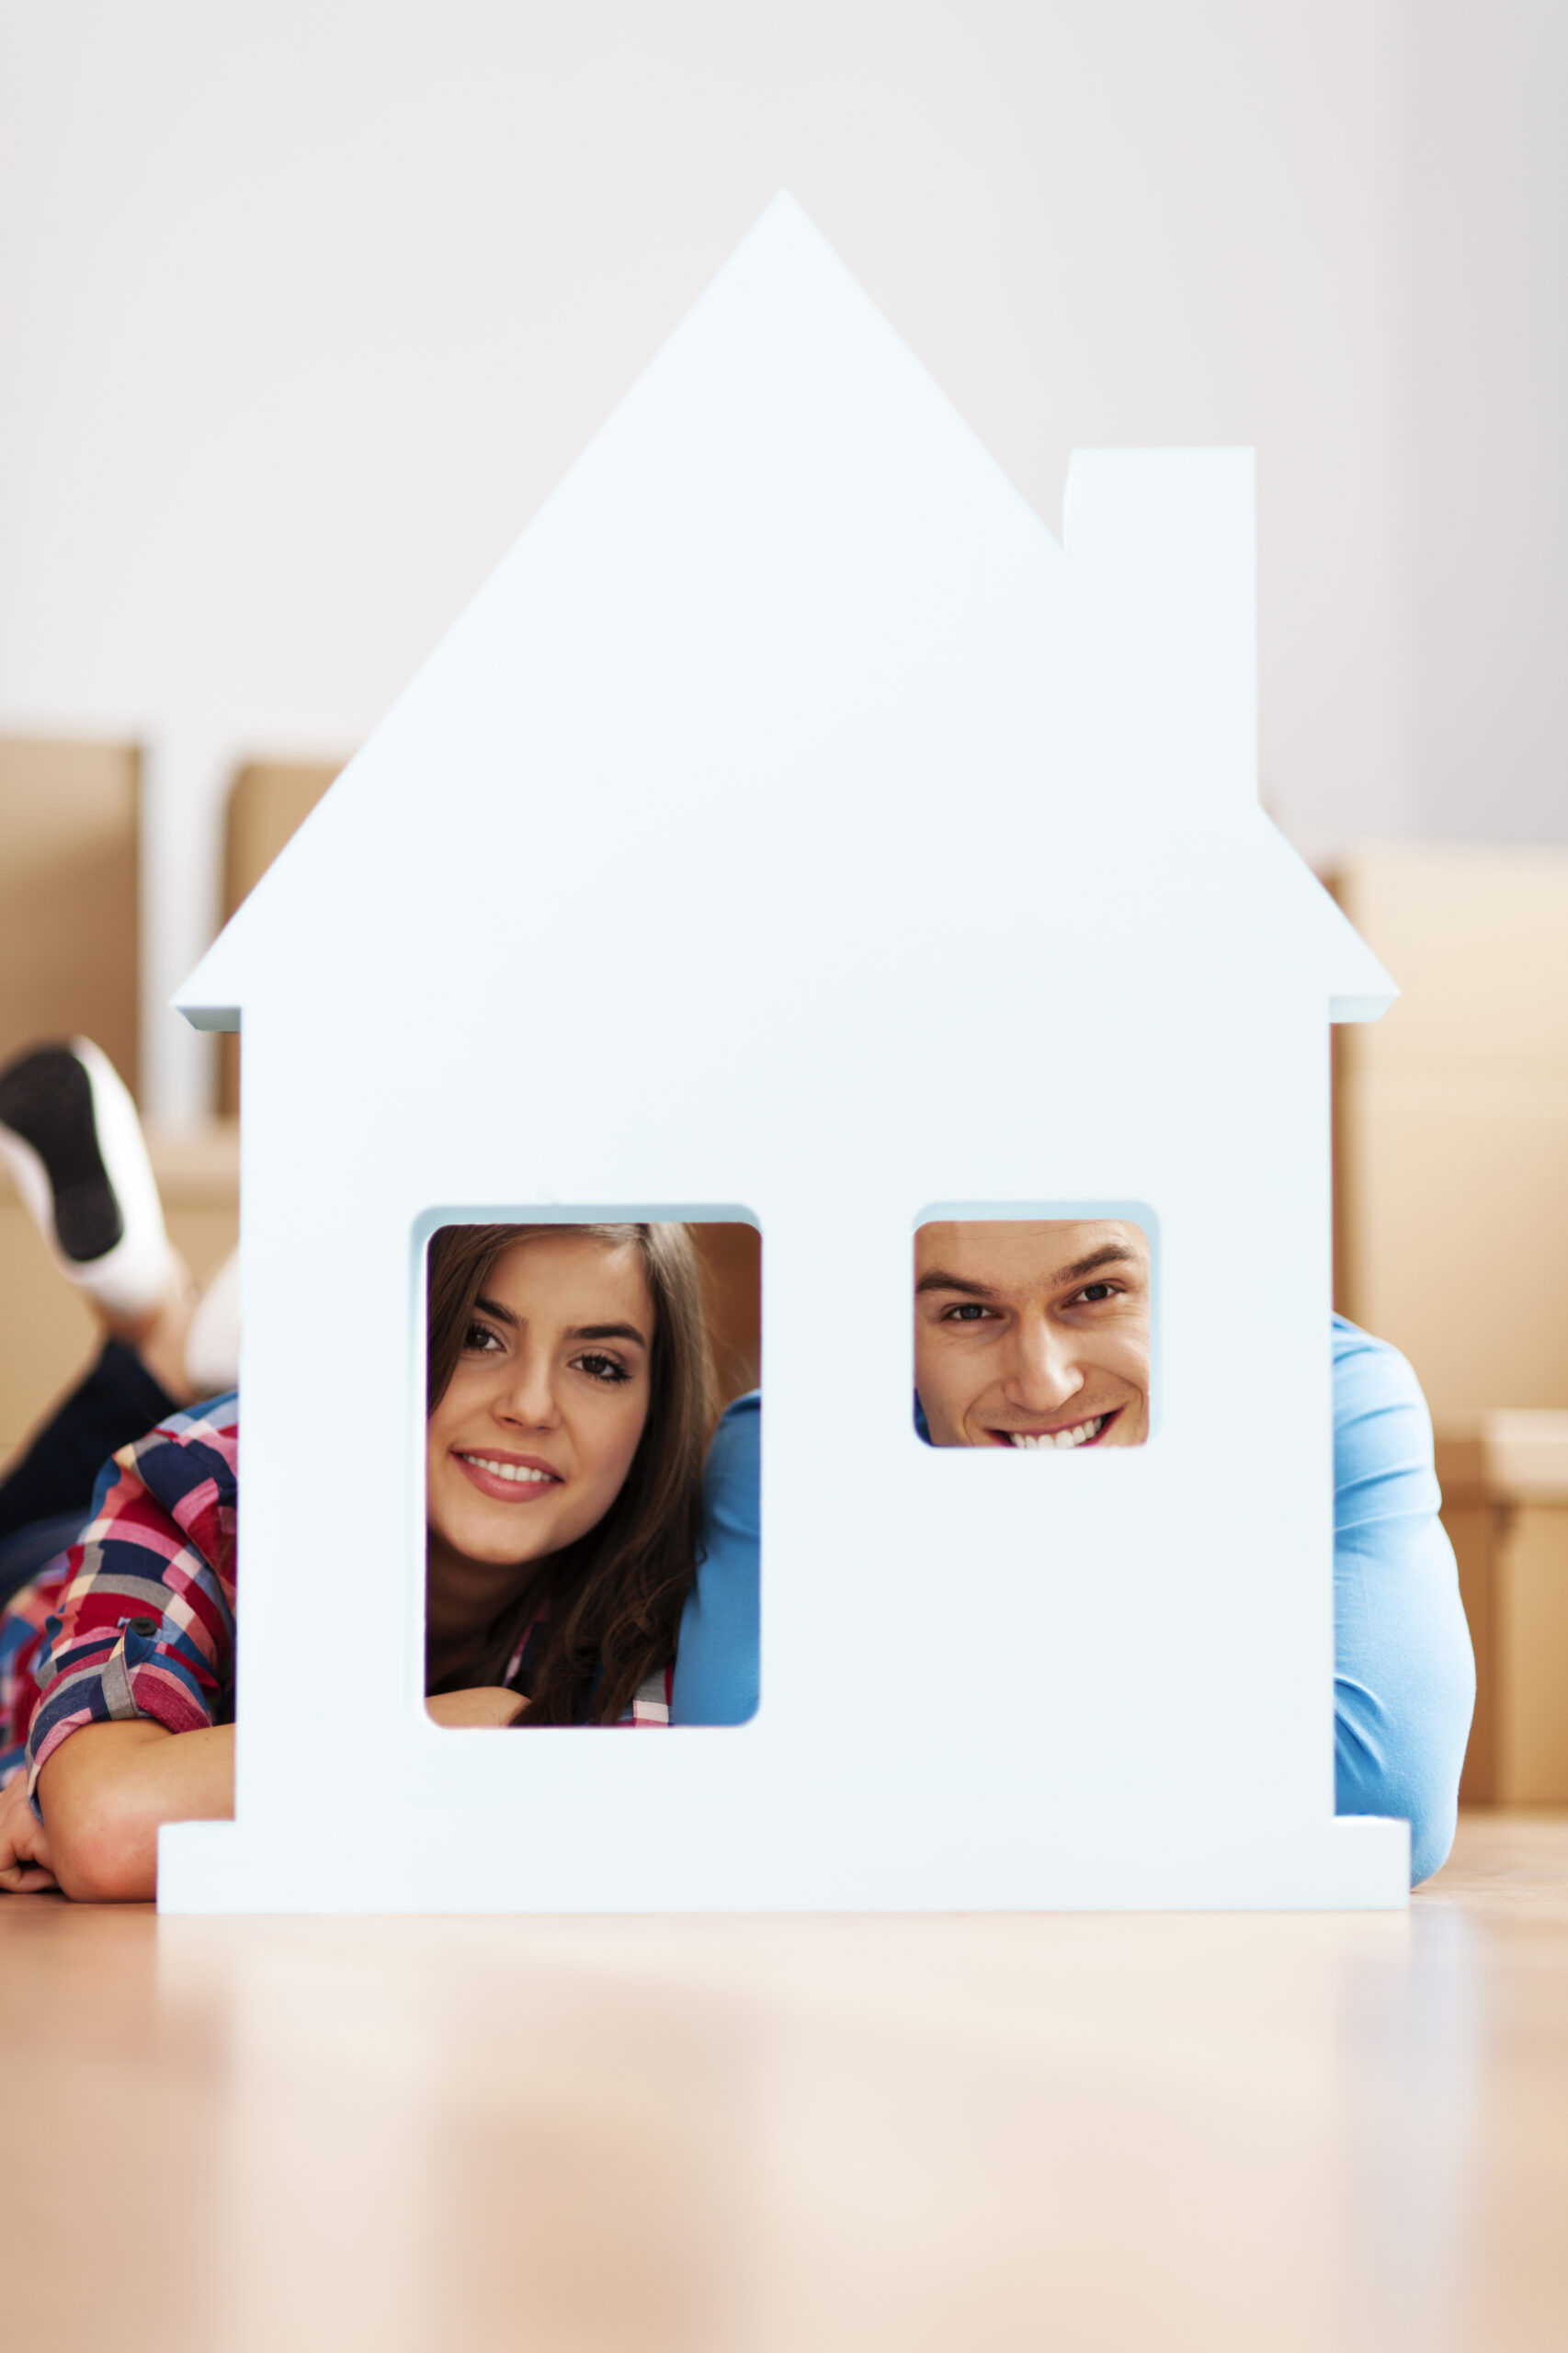 souscrire assurance habitation en ligne